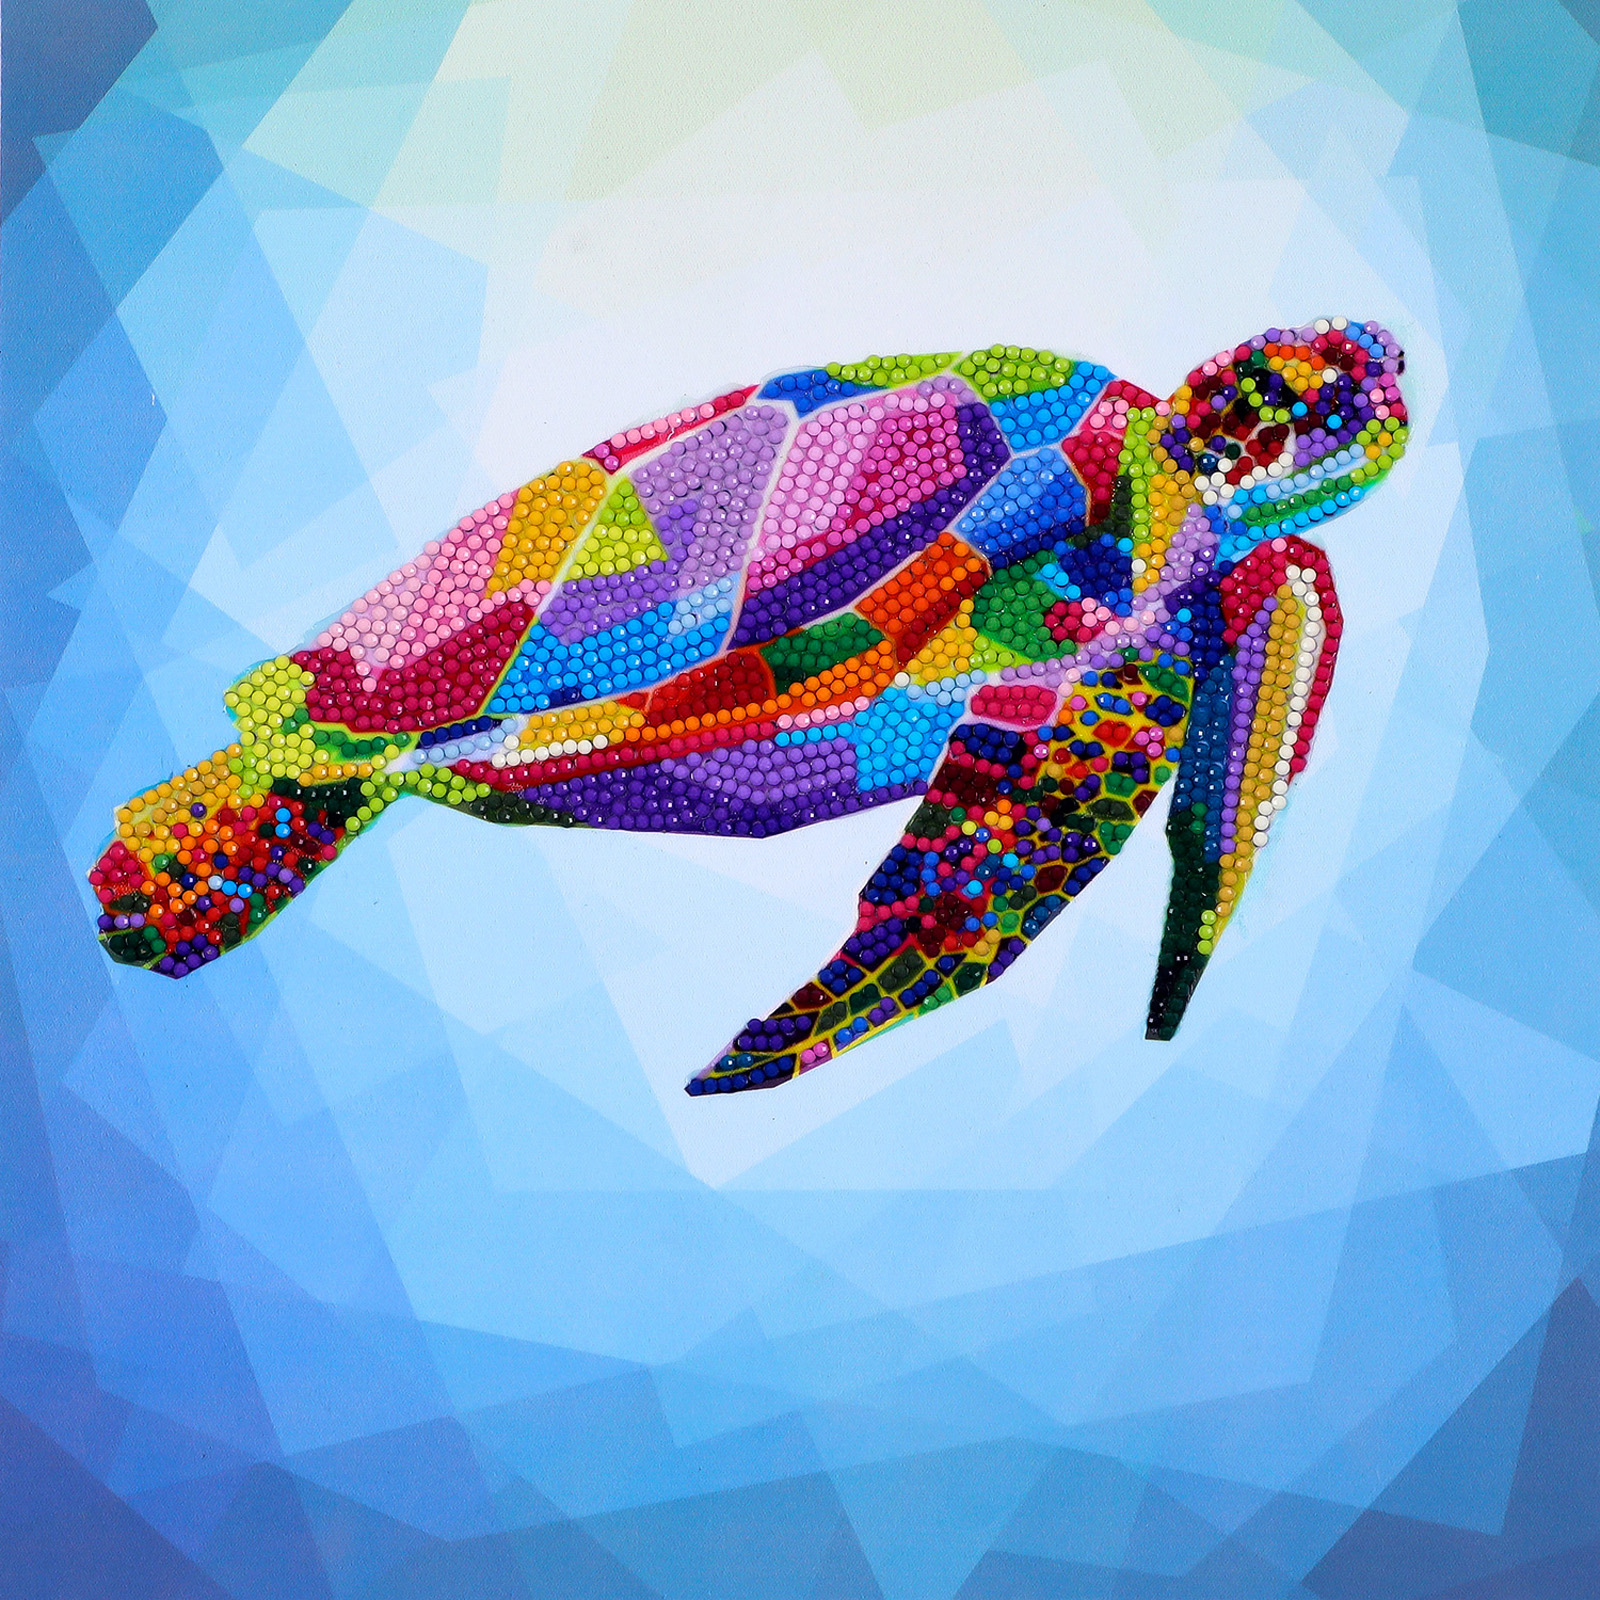 AZQSD Diamond Painting Animal Sea Turtle Handmade Rhinestones AB